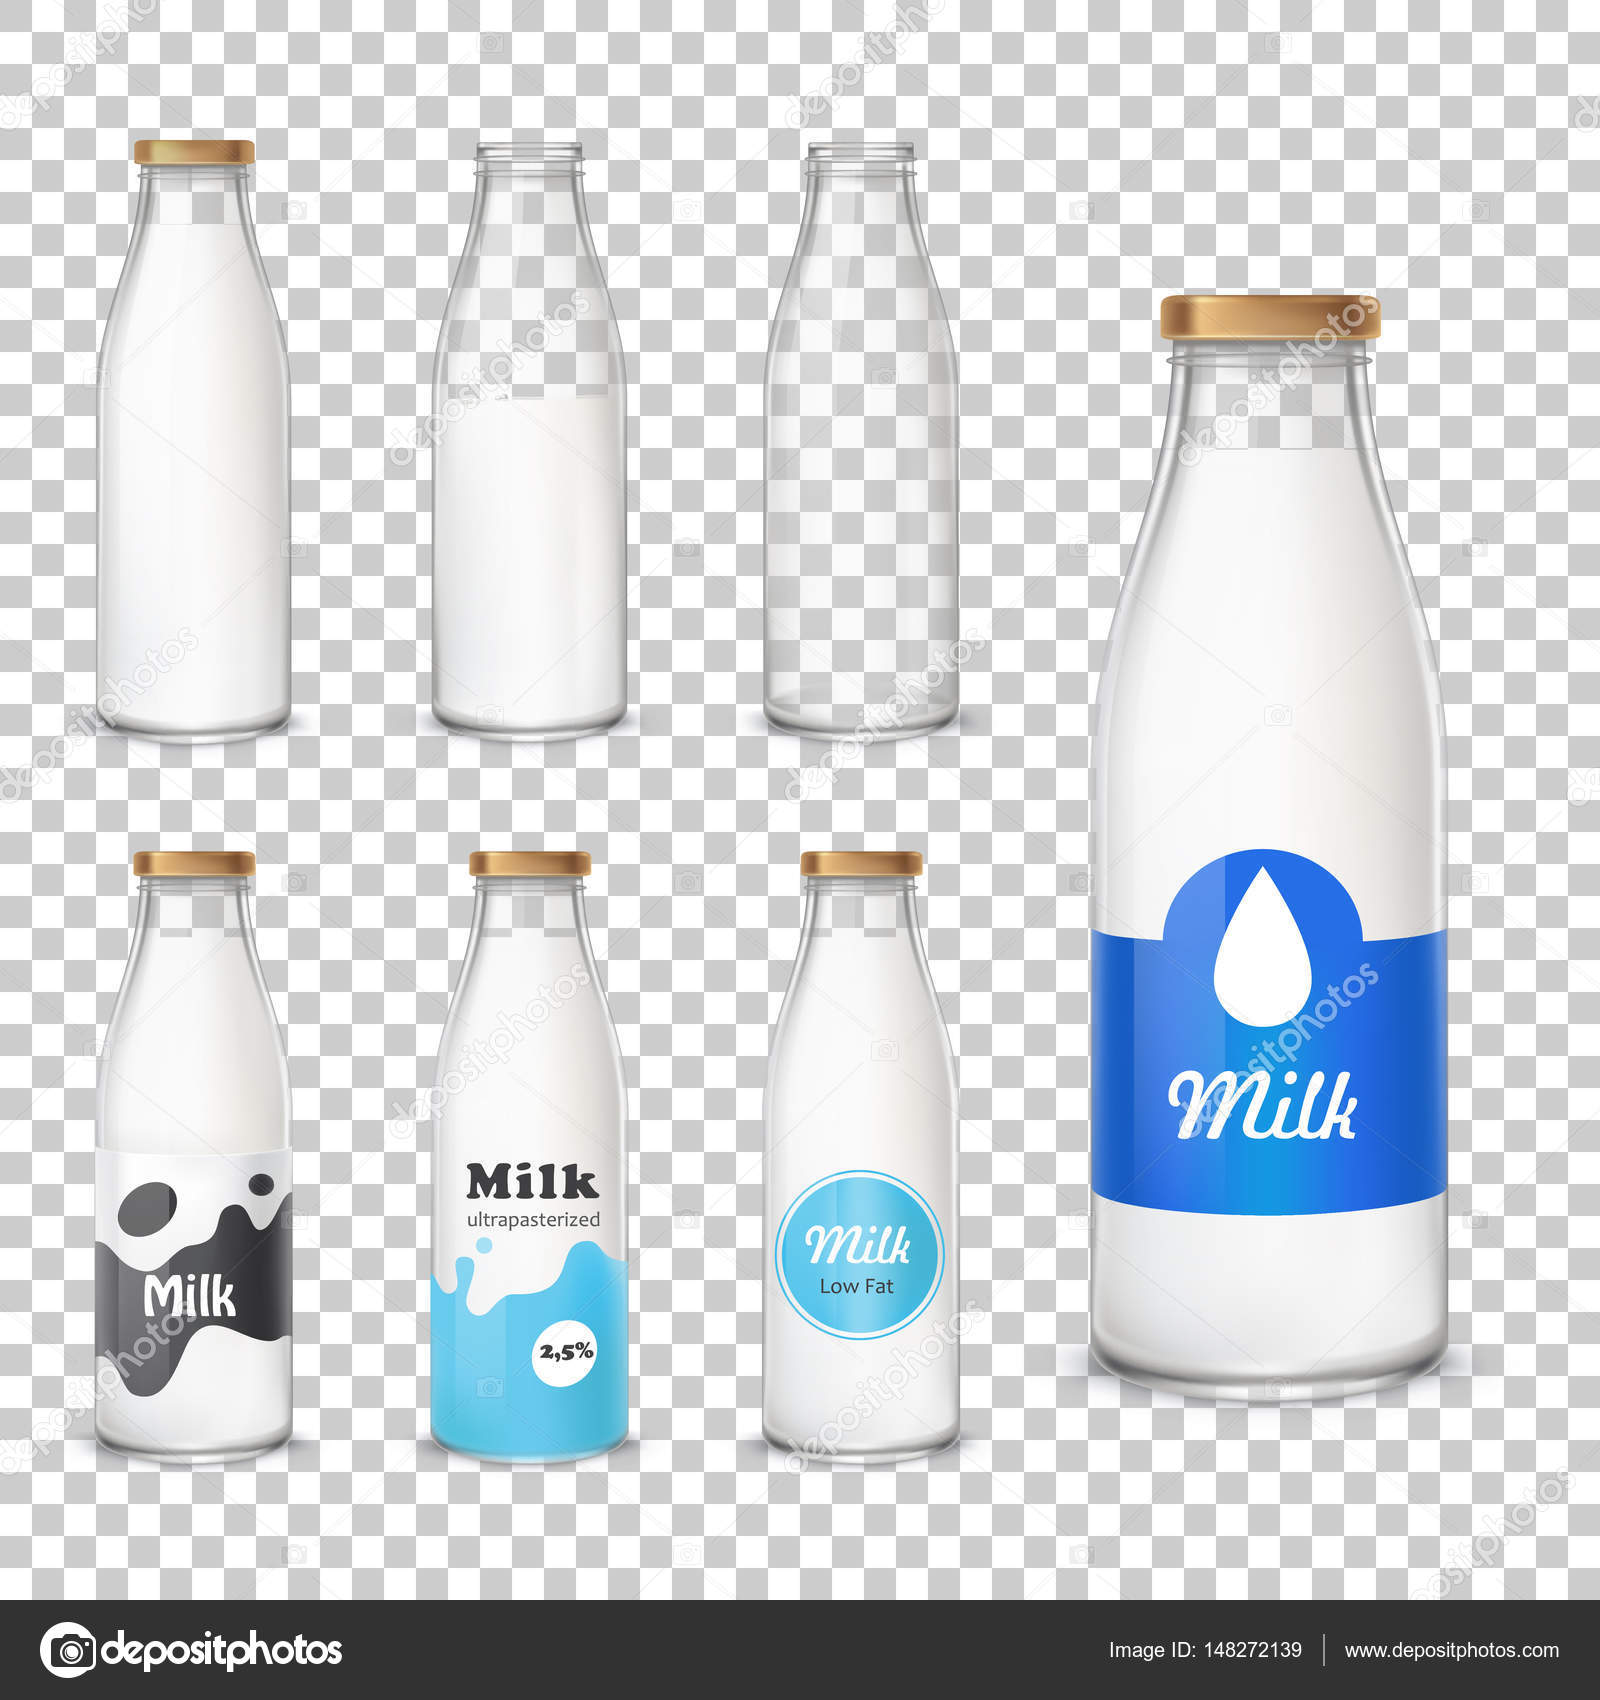 https://st3.depositphotos.com/9058402/14827/v/1600/depositphotos_148272139-stock-illustration-set-of-icons-glass-bottles.jpg